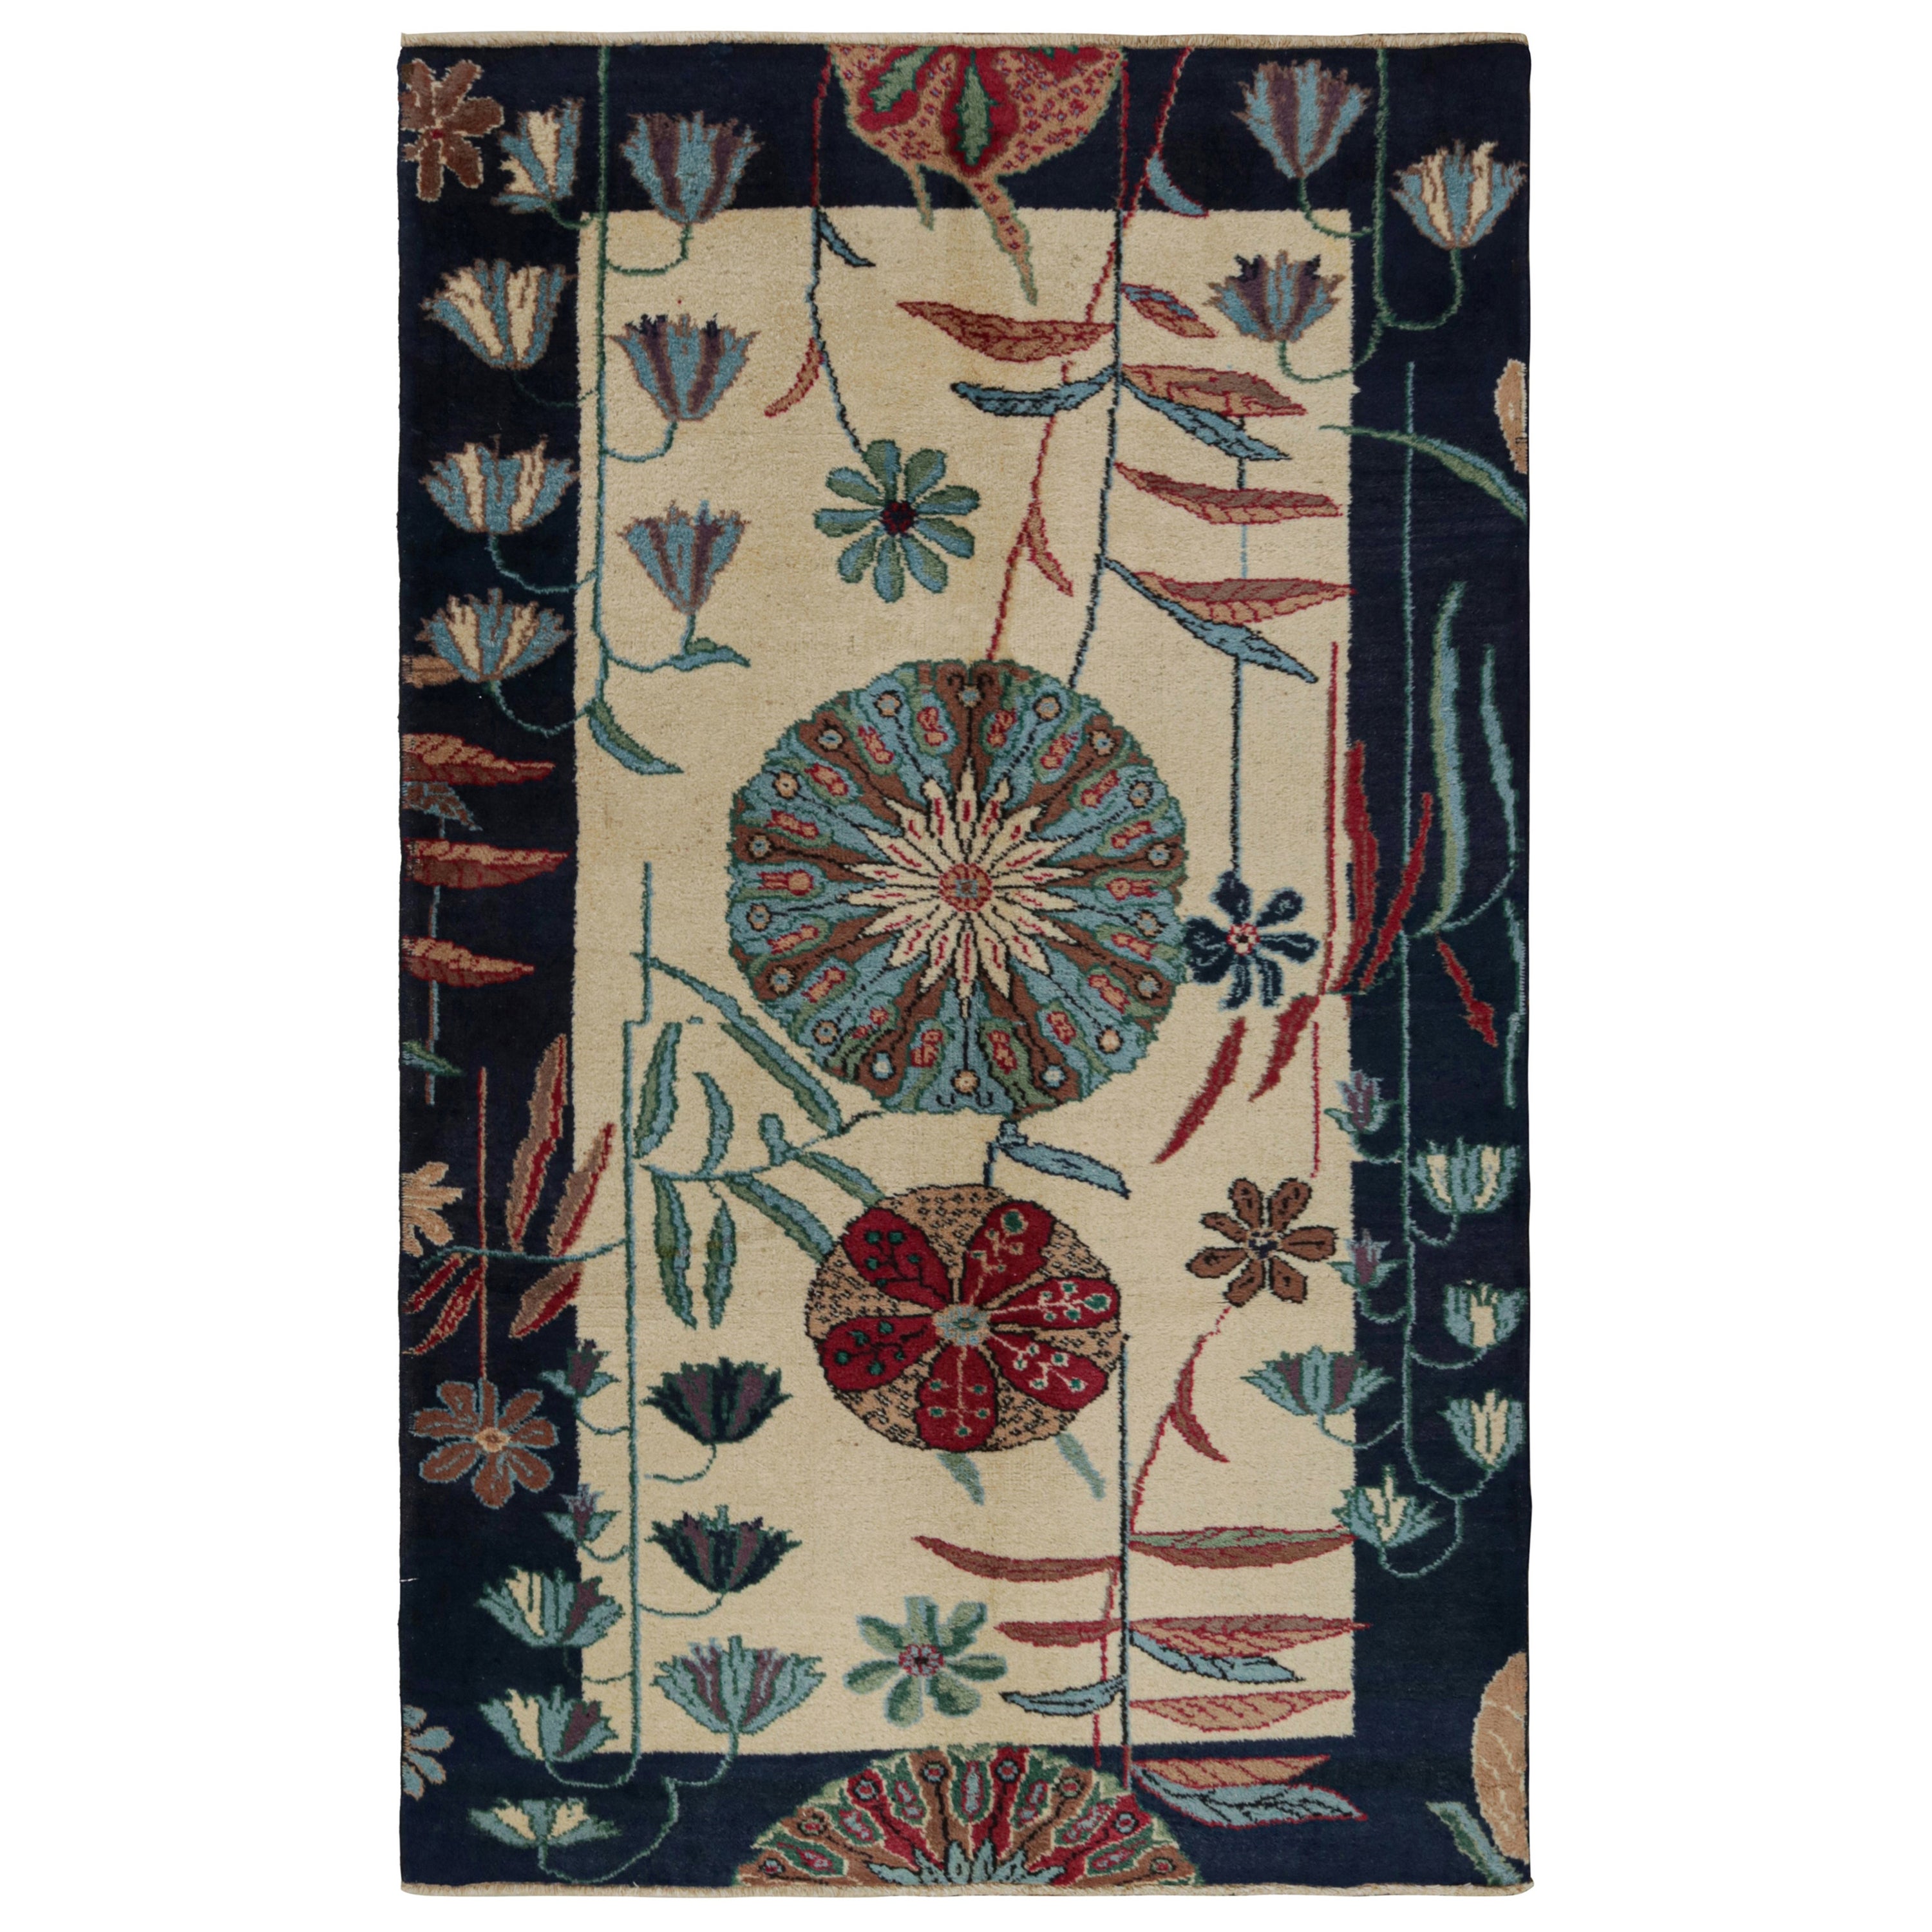 Vintage Zeki Müren Art Deco Rug, with Floral Patterns, from Rug & Kilim